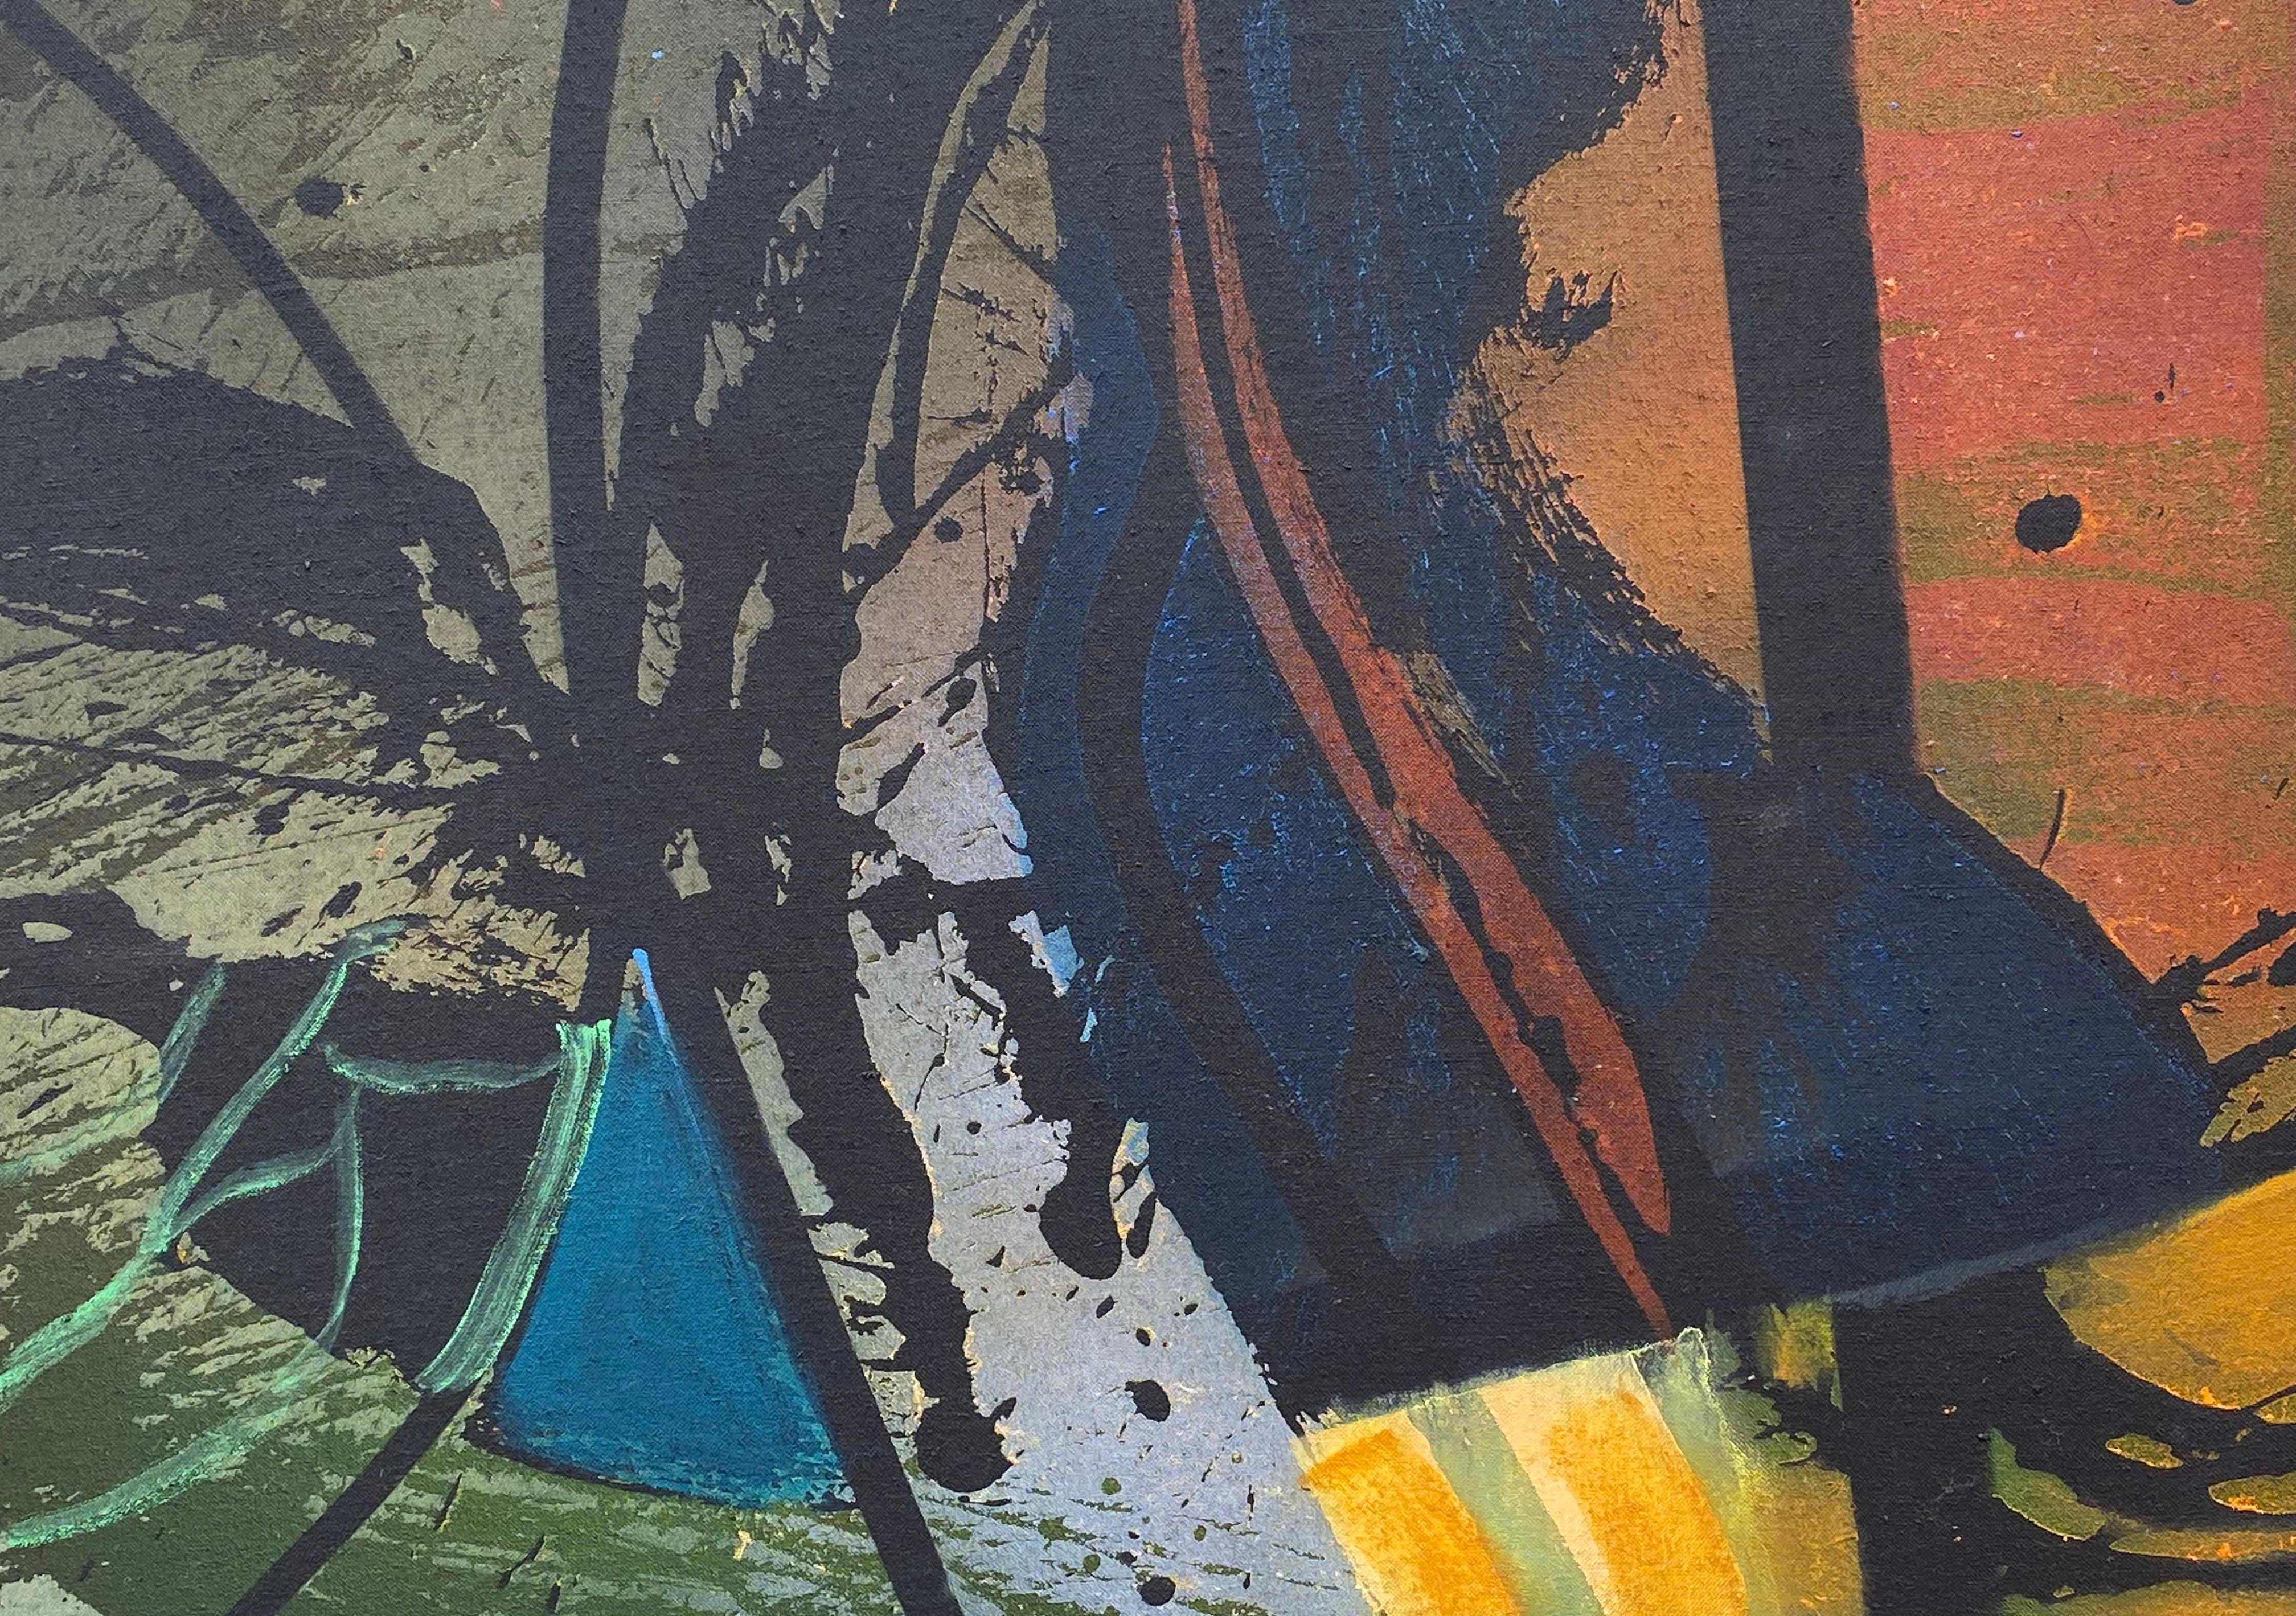 Original, Ölfarbe und Acrylfarbe auf Leinwand von dem bekannten amerikanischen Künstler Syd Solomon.  Signiert unten in der Mitte vom Künstler. Verso betitelt und datiert 1983. Der Zustand ist ausgezeichnet. Original-Galerie-Schweberahmen. Die